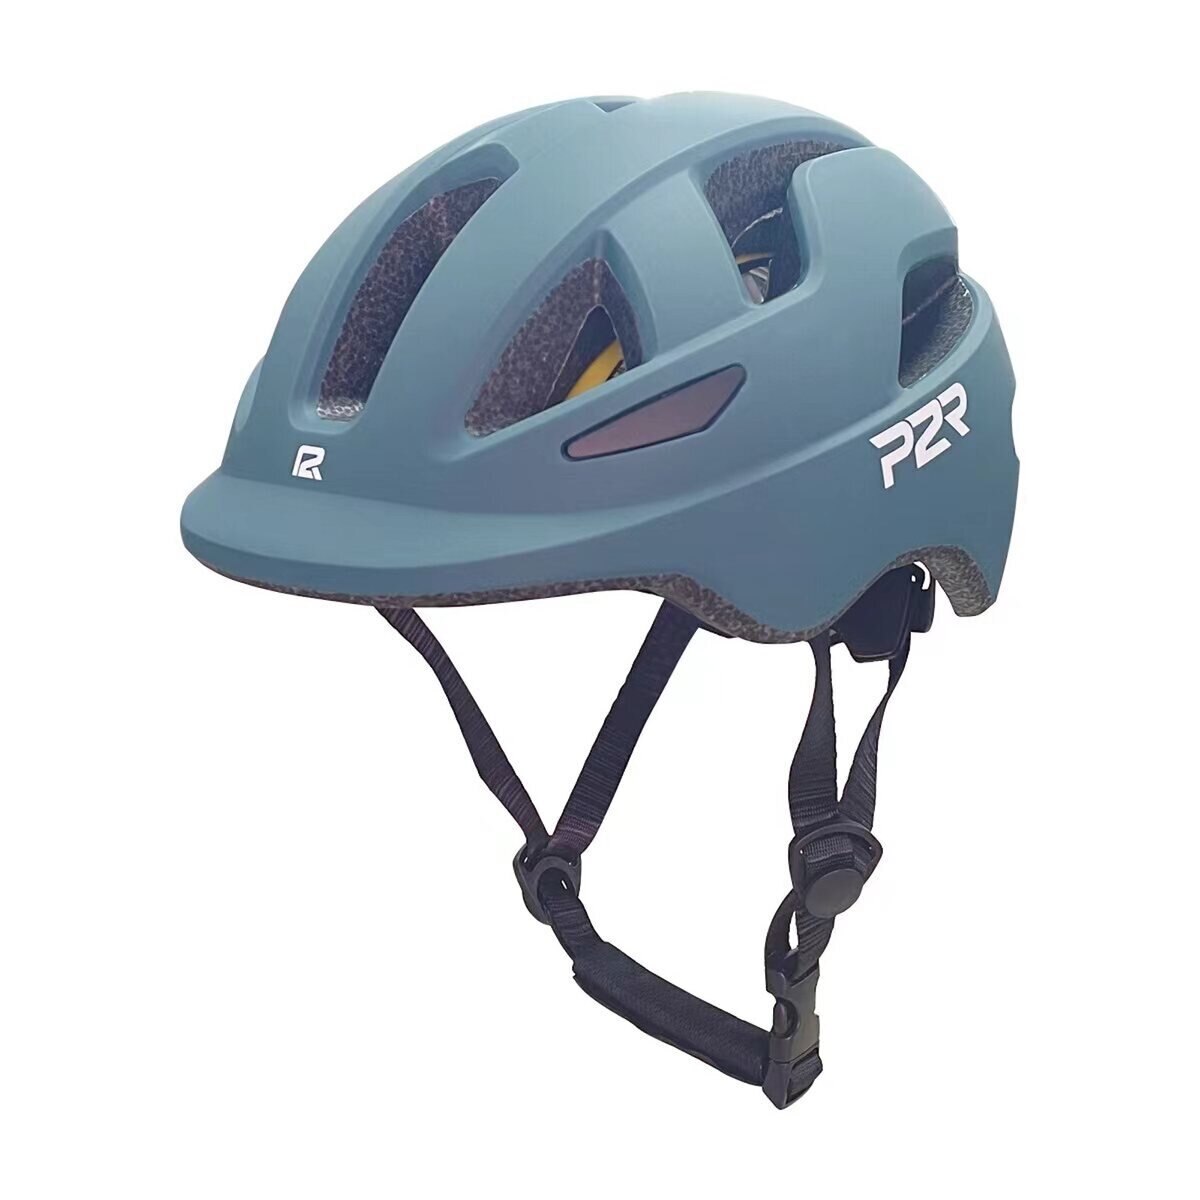 P2R MIPS搭載 自転車用インモールドヘルメット 子供用 オーシャンブルー